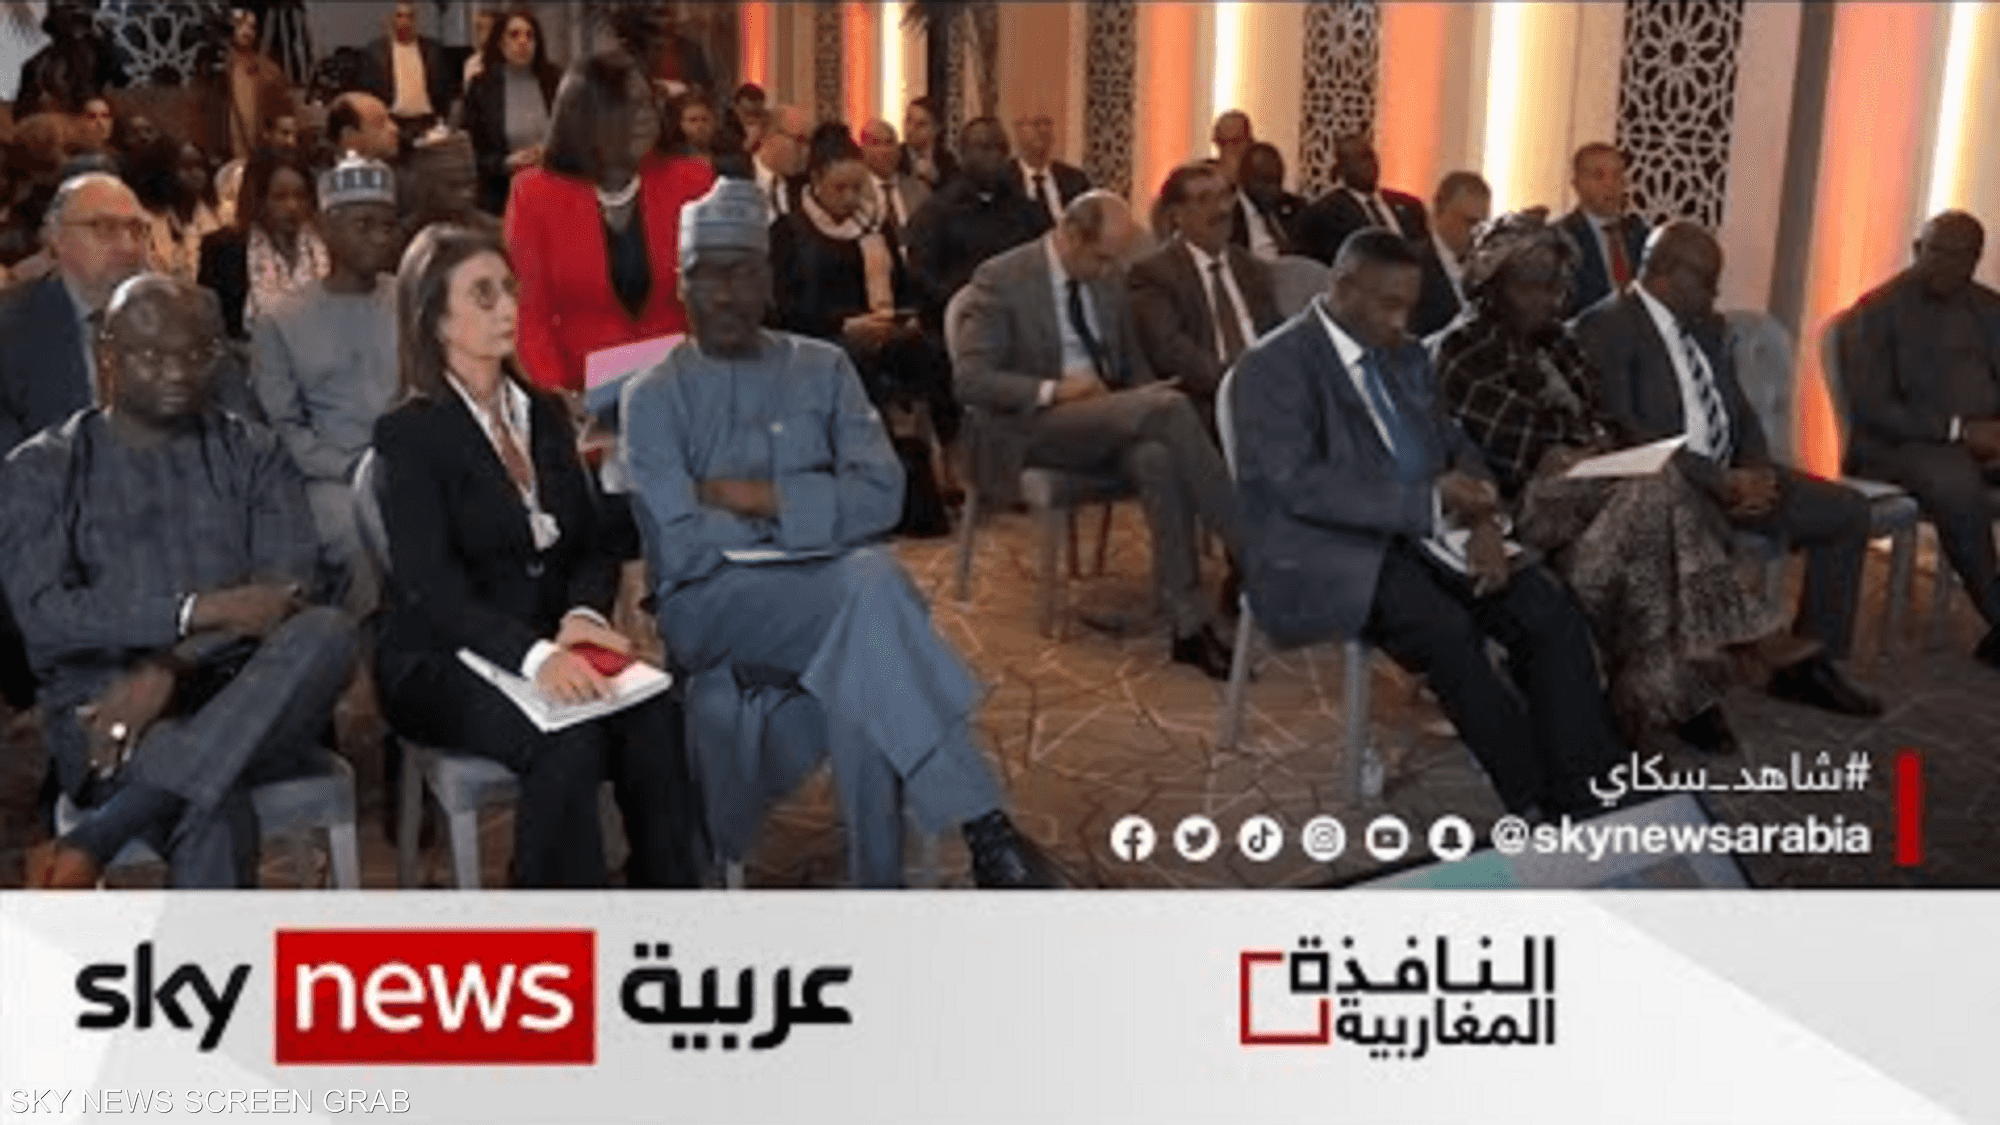 المغرب يوقع على 5 مذكرات تفاهم حول مشروع أنبوب غاز نيجيريا